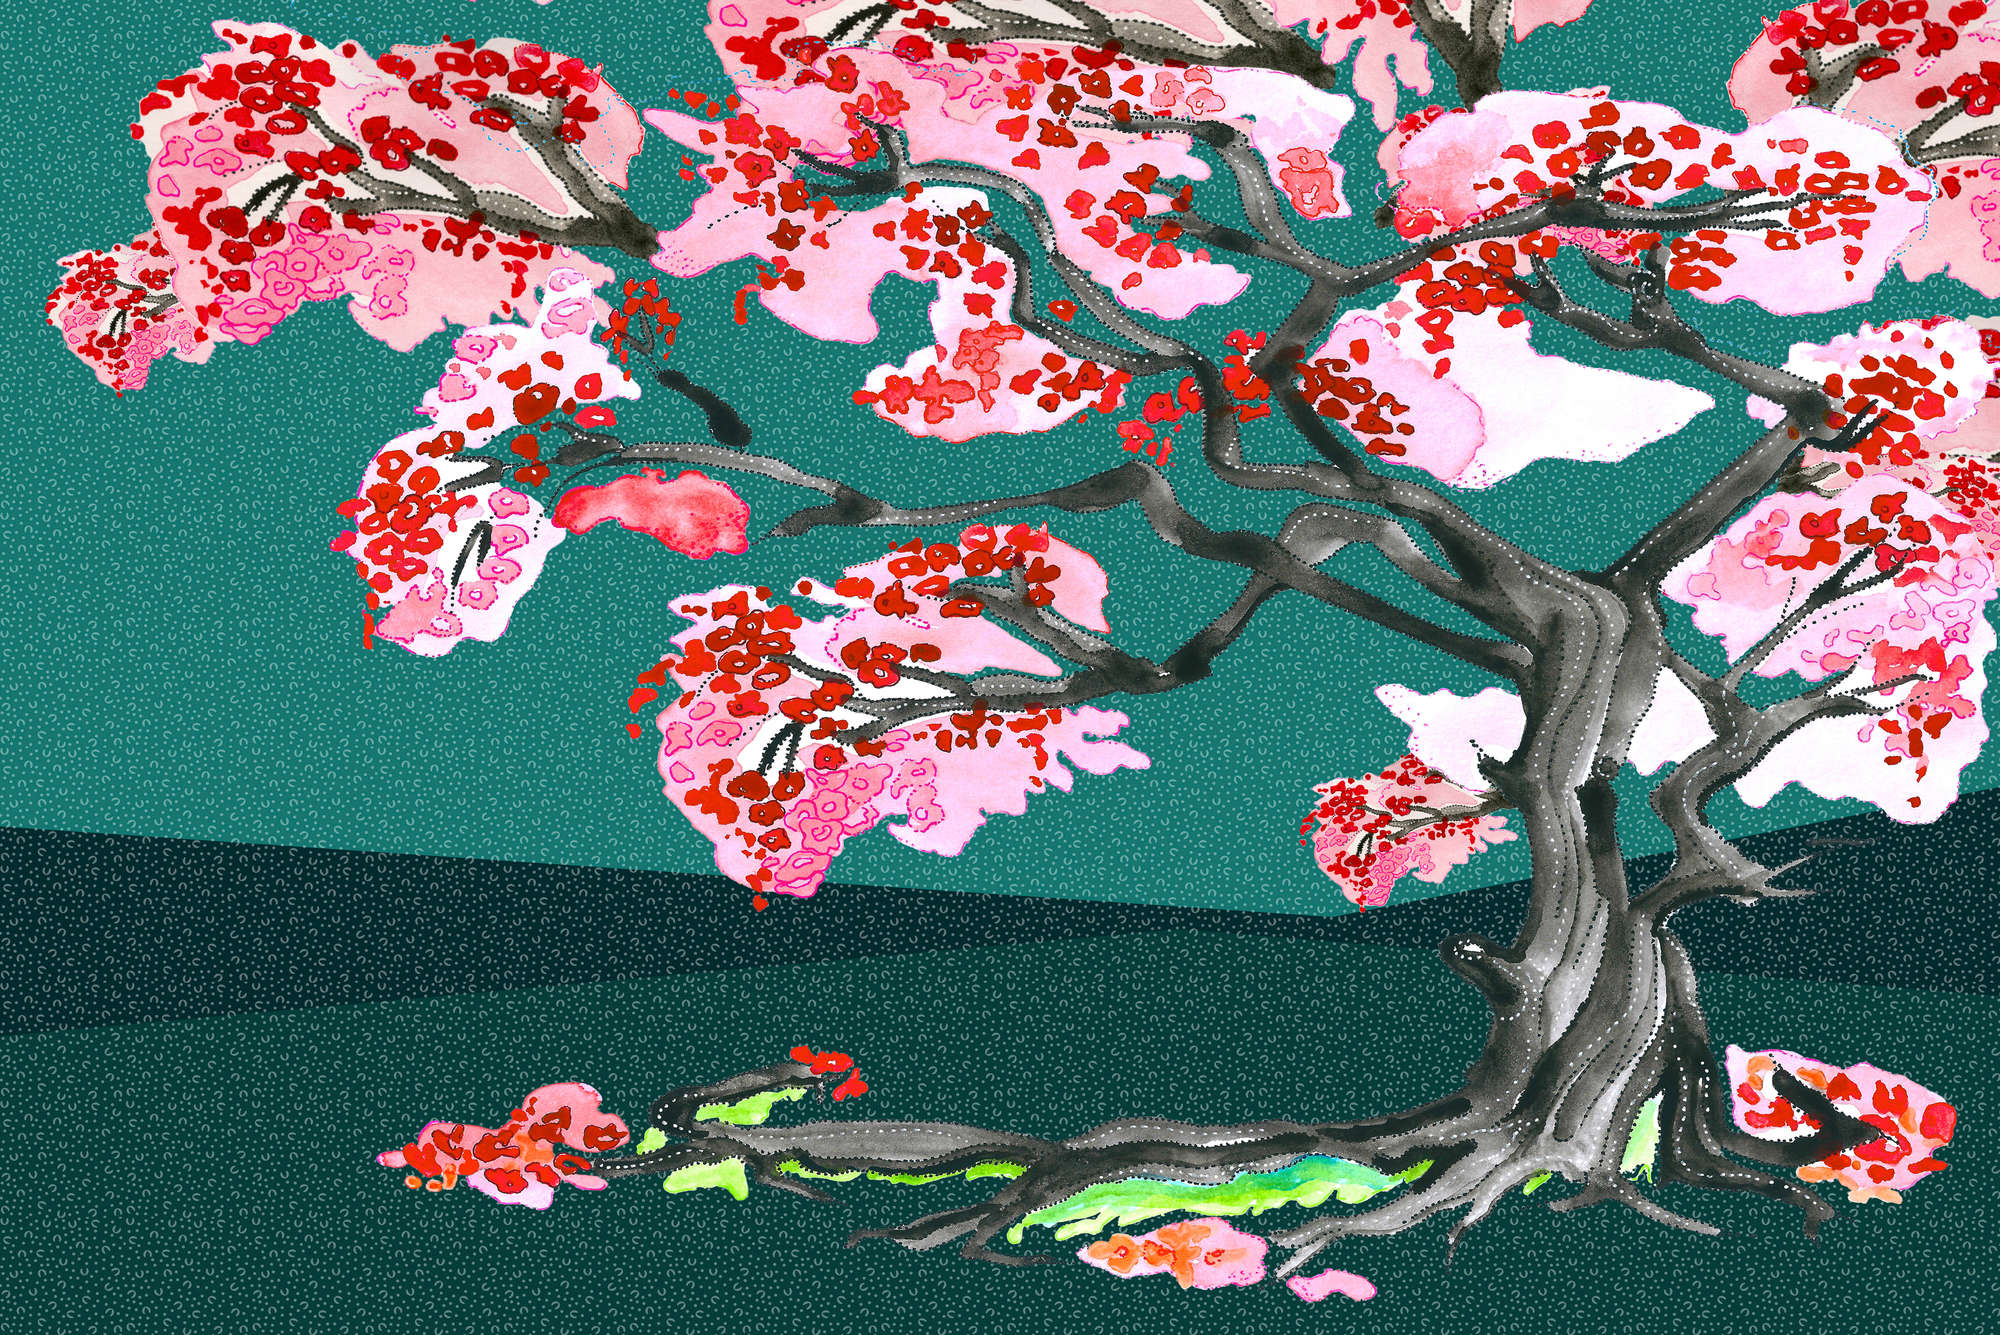             Mural de flores de cerezo en estilo de cómic asiático sobre tejido no tejido liso mate
        